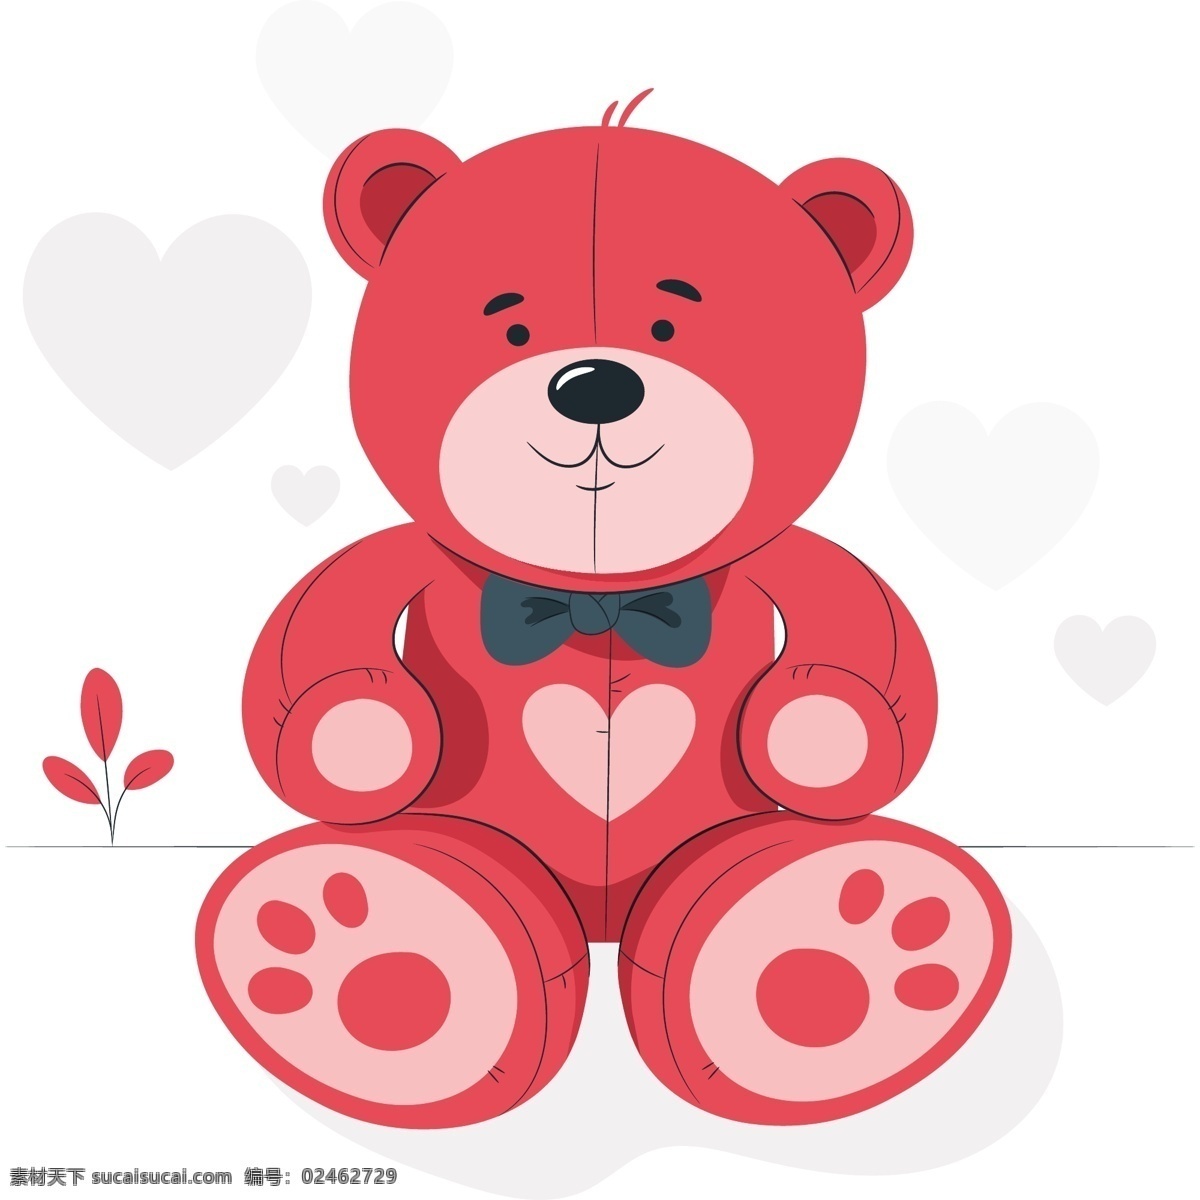 泰迪熊 儿童 可爱 孩子 玩具 胡子 游戏 泰迪 立方体 童装 红色小熊 矢量素材